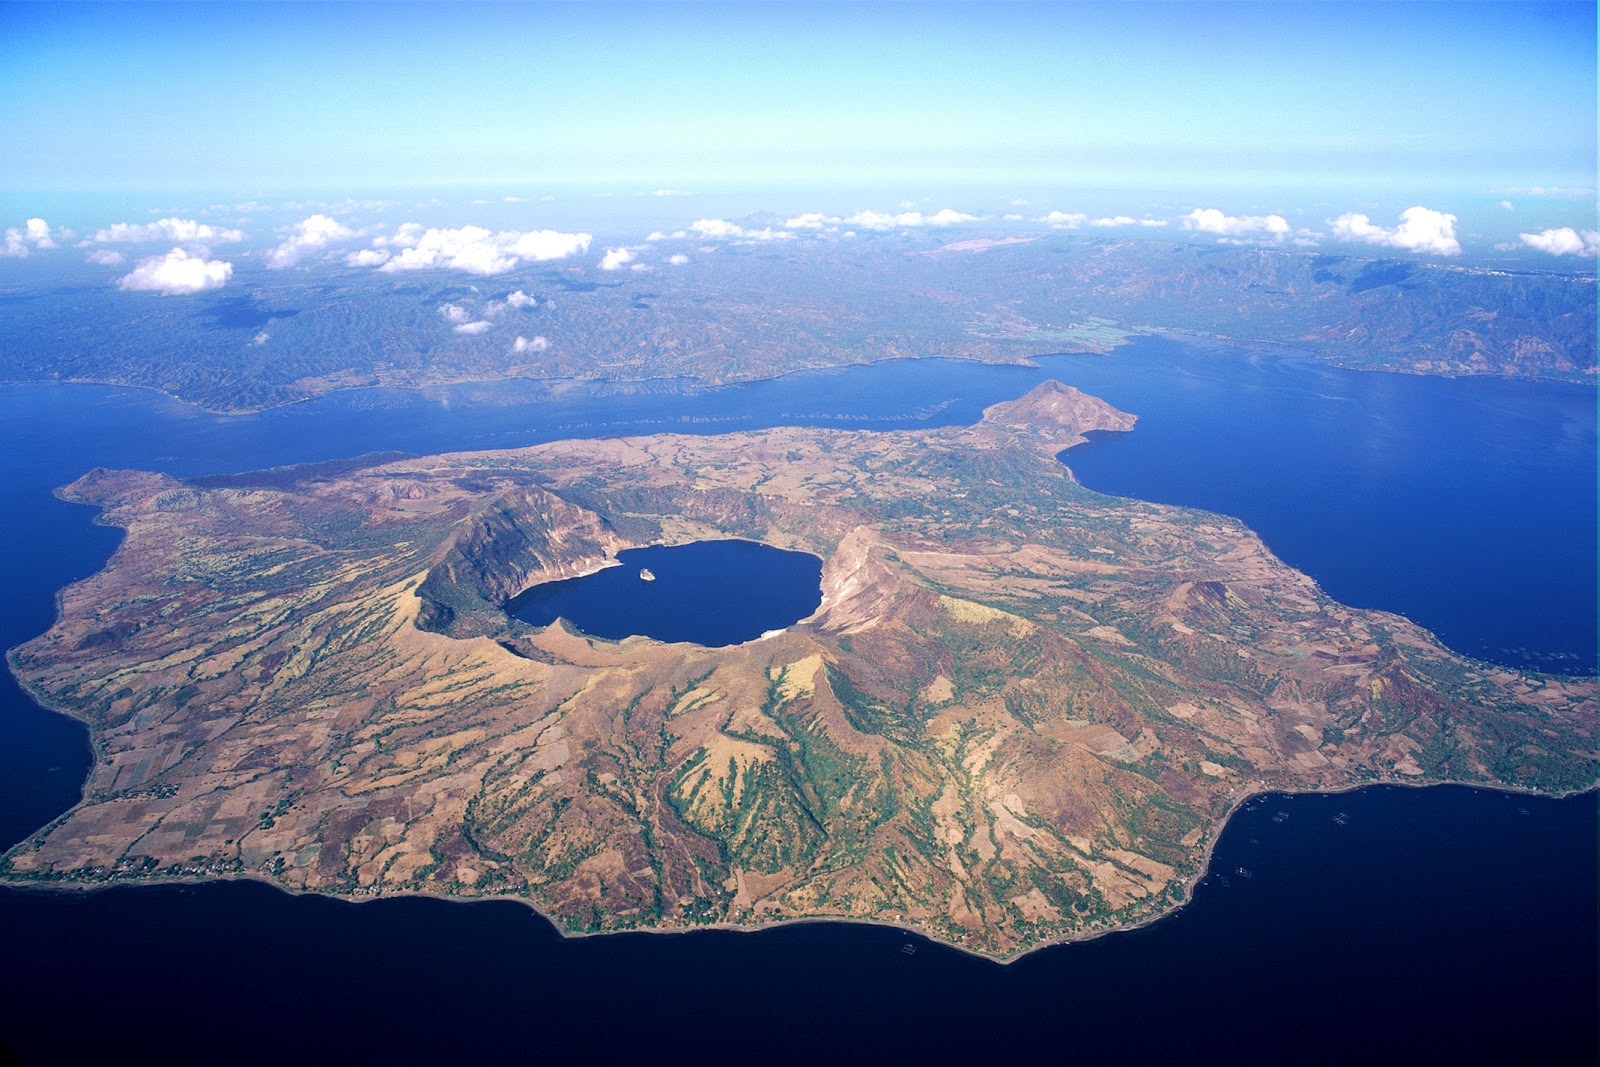 Nằm trong lòng hồ Taal, nên ngọn núi lửa được gọi tên là Taal, phía trong núi lửa Taal lại có một chiếc hồ nhỏ tên là Crater. Có lẽ vì thế mà dân địa phương thường gọi là “hồ trong hồ”. 